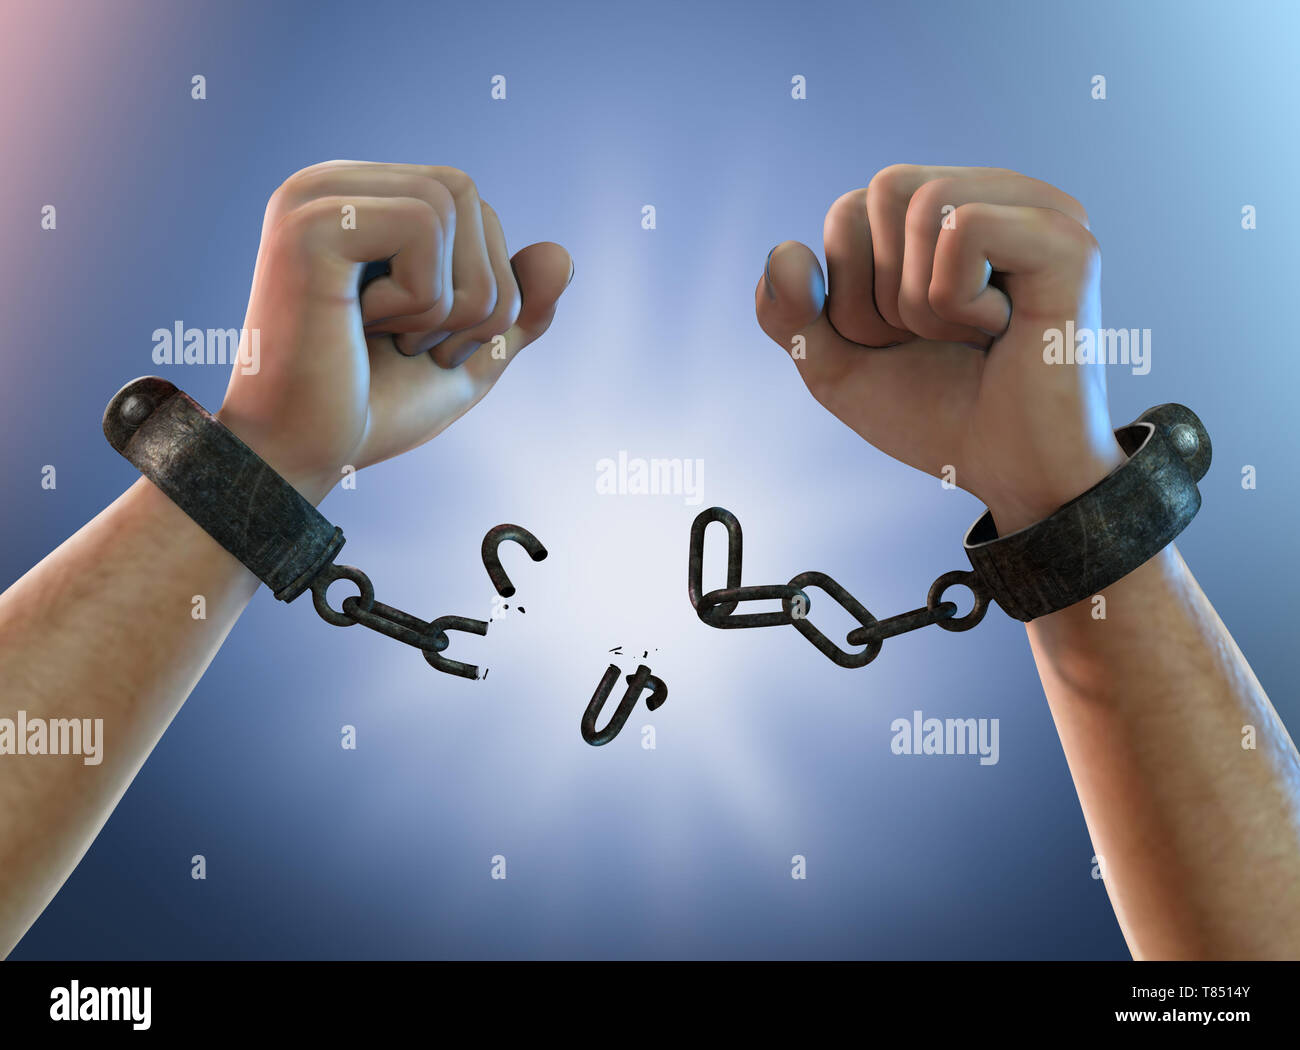 Breaking free chains fotografías e imágenes de alta resolución - Alamy